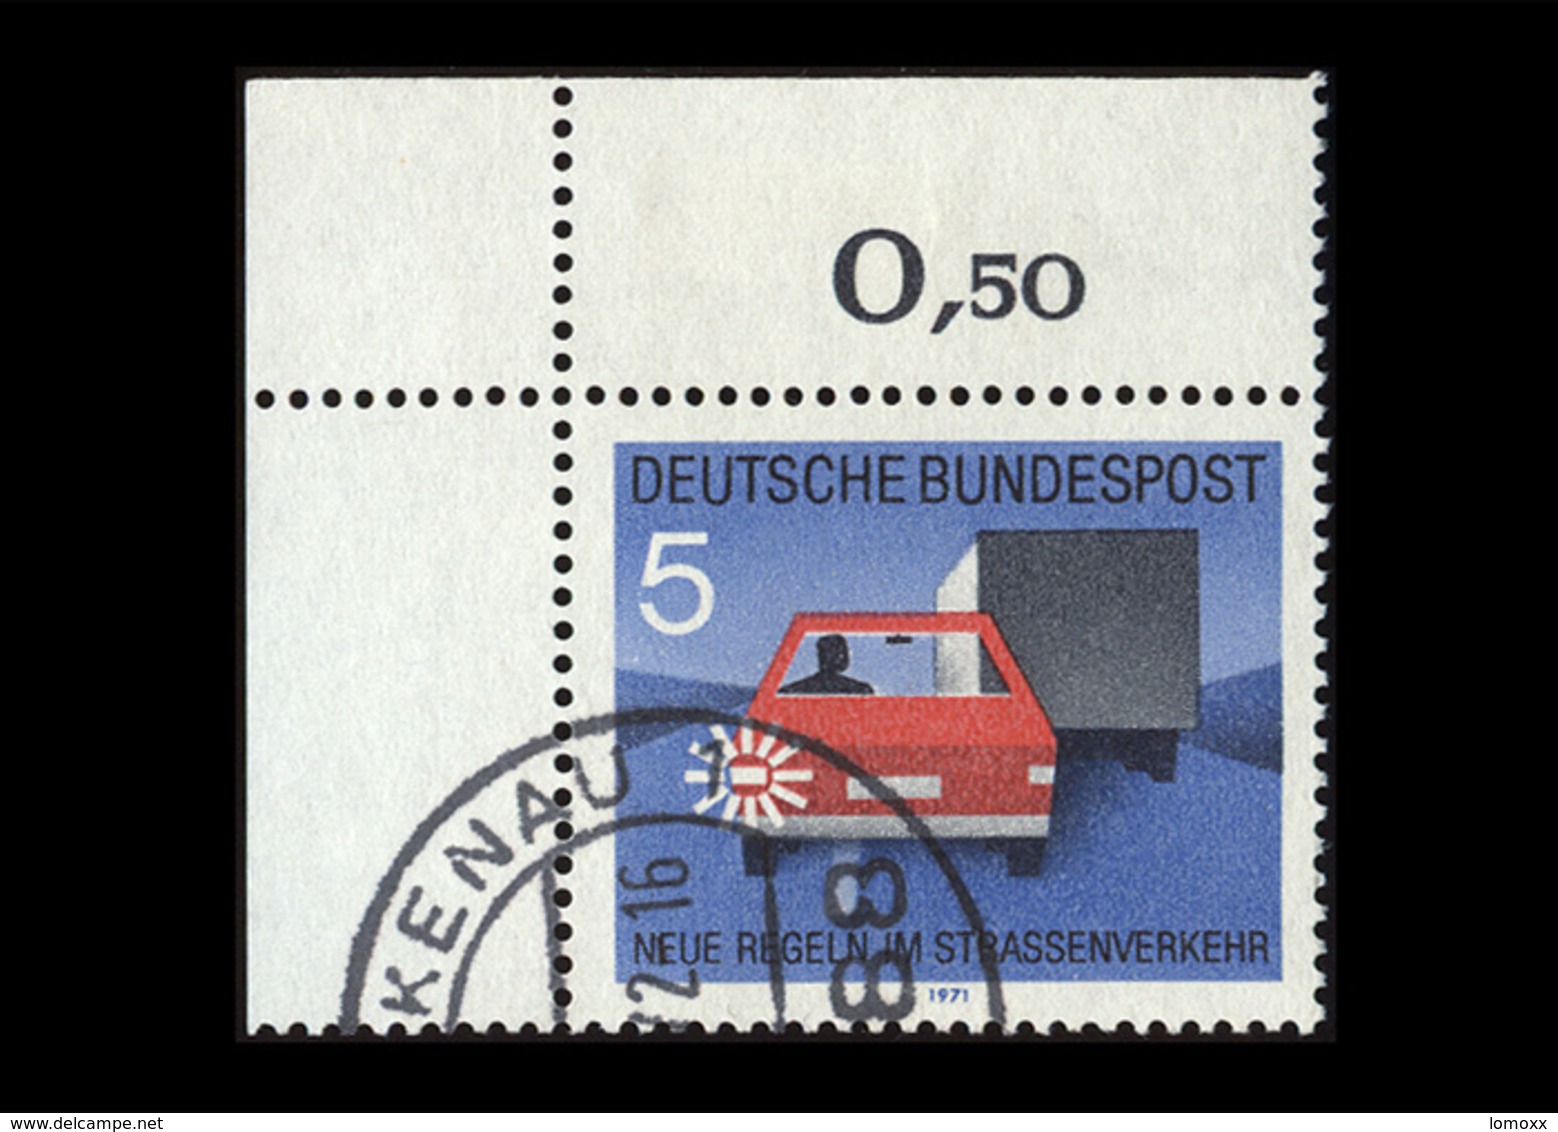 BRD 1971, Michel-Nr. 670, Neue Regeln Im Straßenverkehr, 5 Pf., Eckrand Oben Links, Gestempelt - Gebraucht